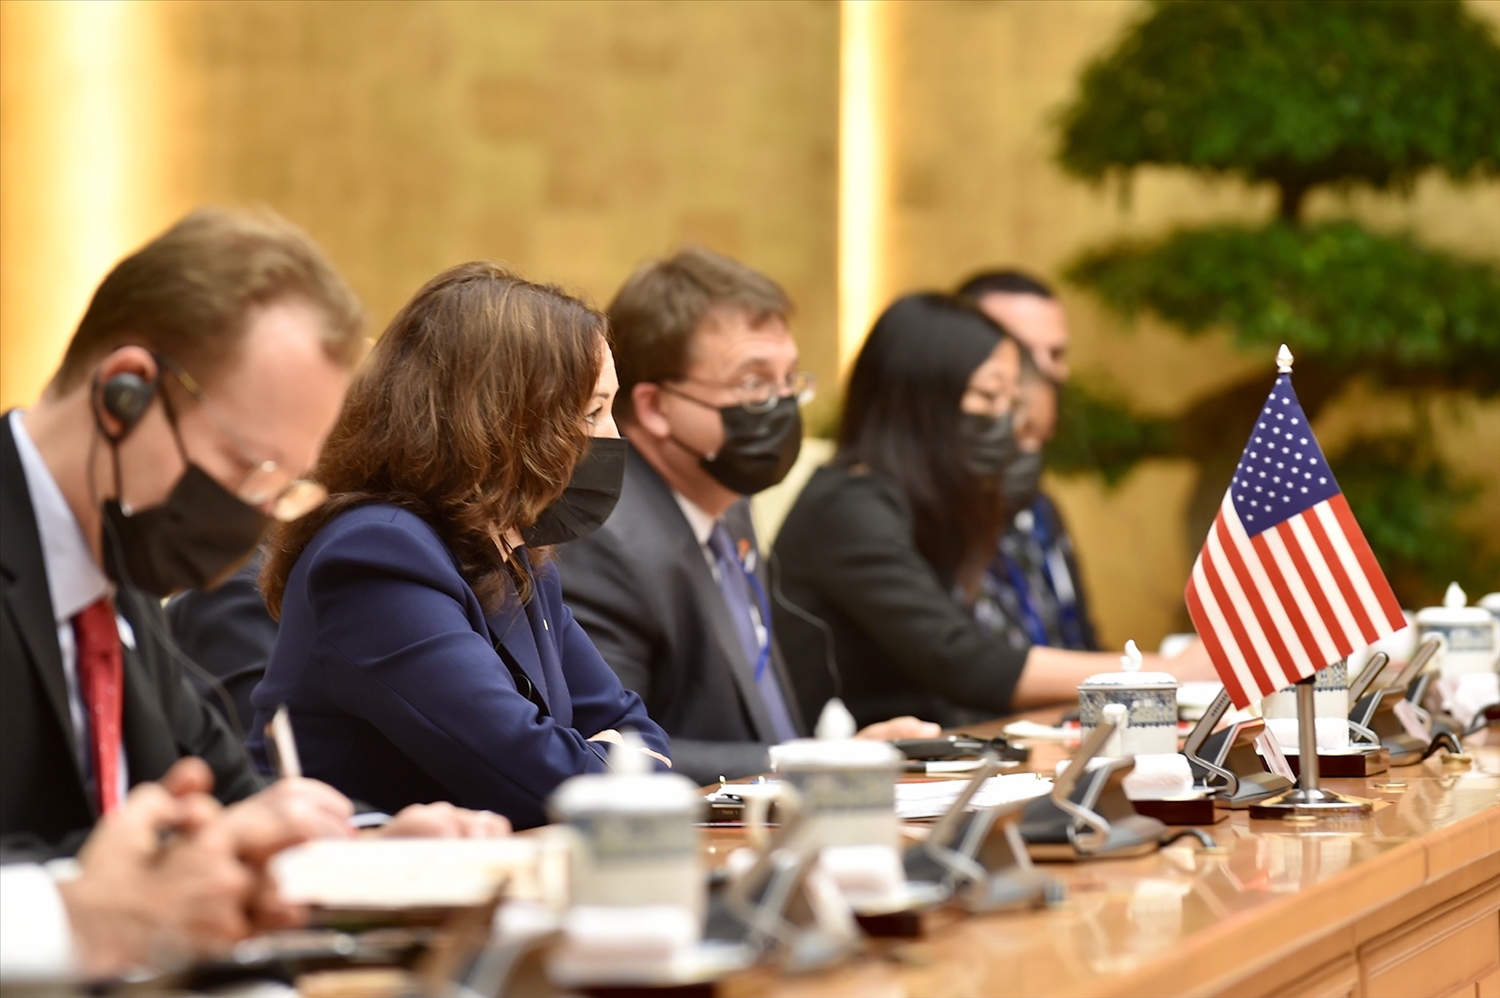 Phó Tổng thống Kamala Harris tái khẳng định Hoa Kỳ ủng hộ một Việt Nam mạnh, độc lập, thịnh vượng và cam kết tiếp tục thúc đẩy quan hệ ngày càng sâu rộng, ổn định, vững chắc thời gian tới. - Ảnh: VGP/Nhật Bắc